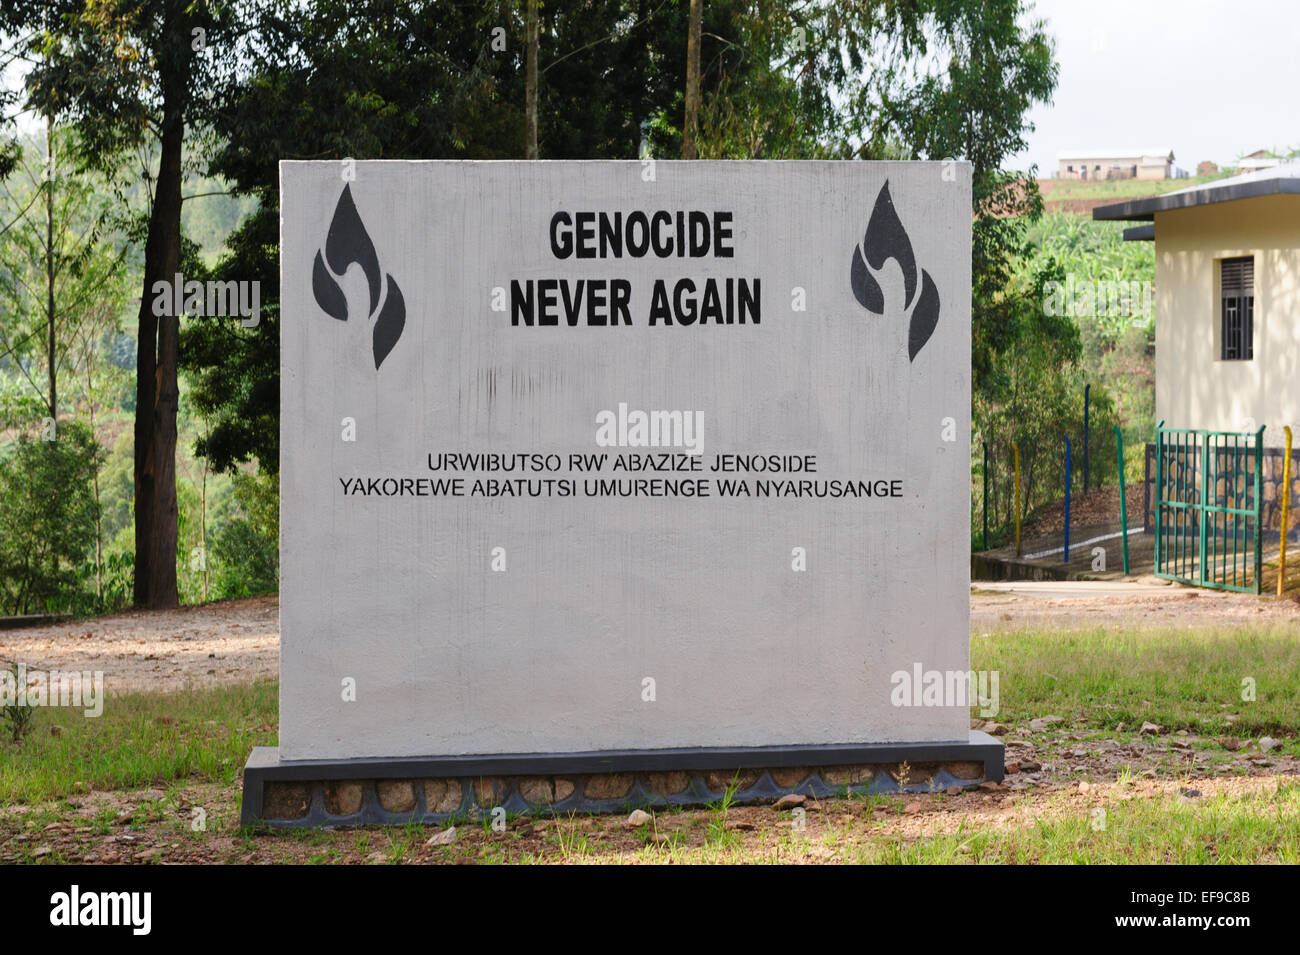 Monumento di pietra vicino al lago Kivu, Ruanda, che commemora il genocidio nel 1994 Foto Stock